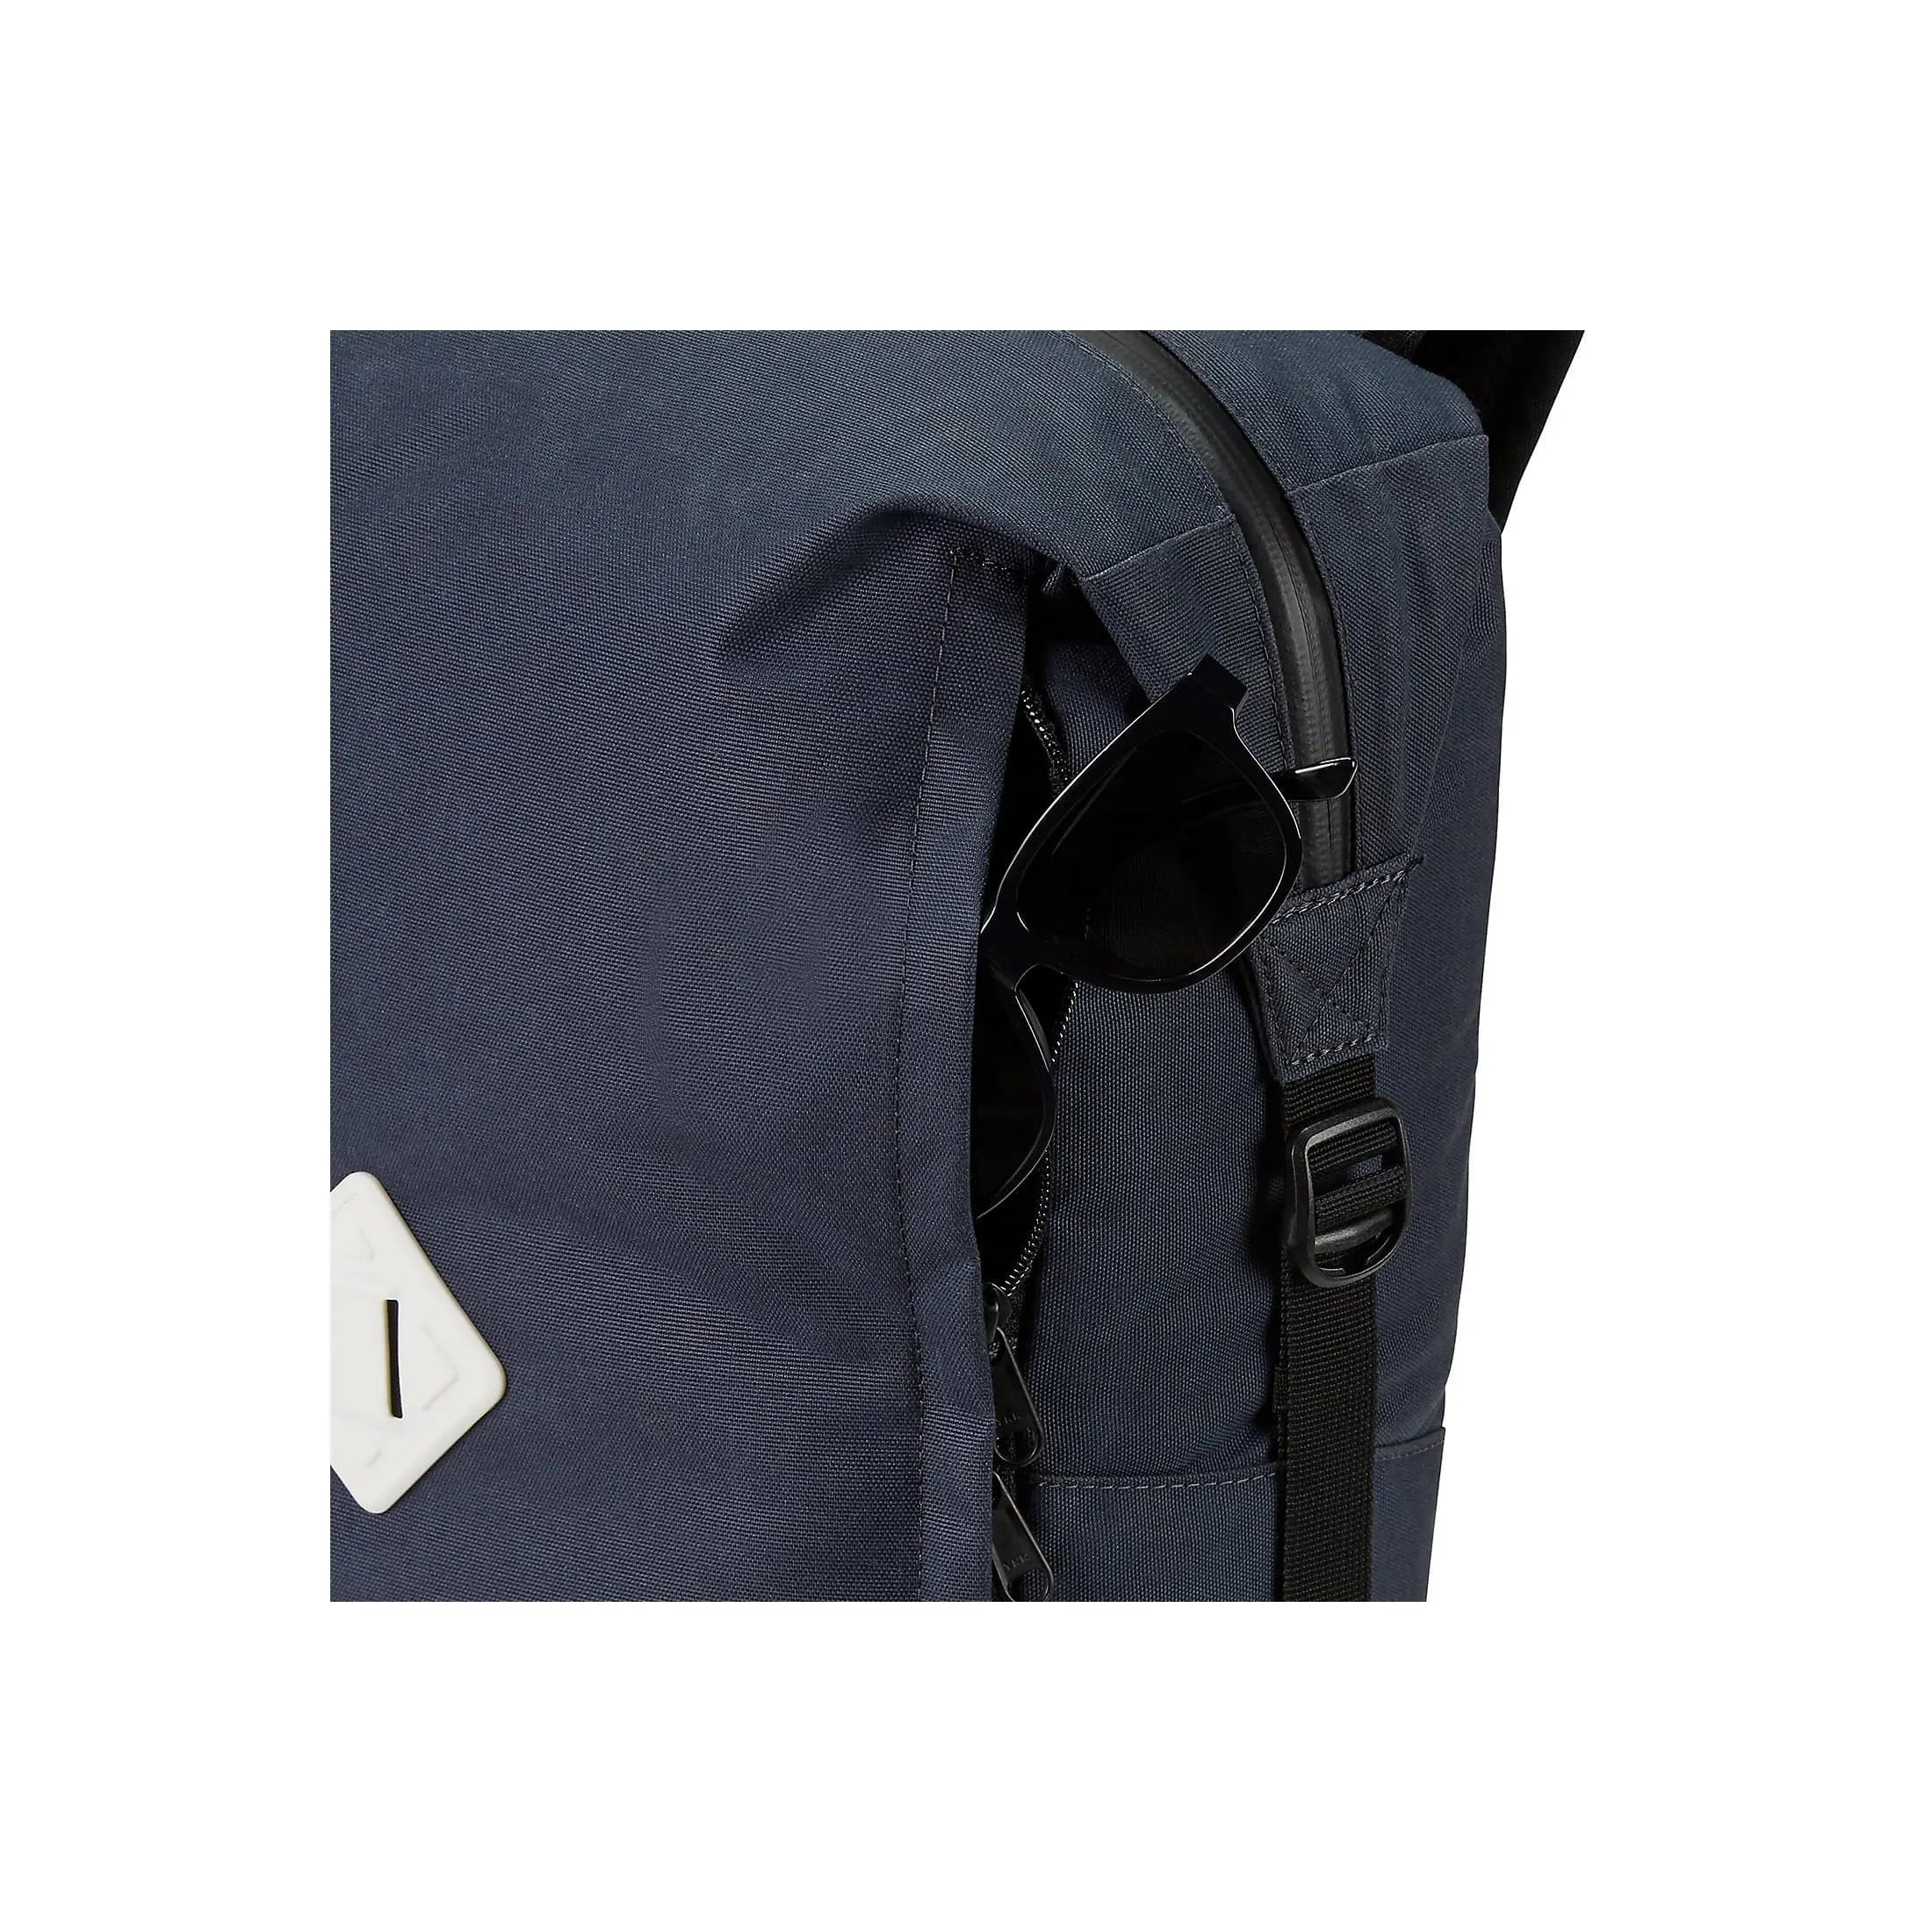 Dakine Packs & Bags Infinity Pack LT 22L Backpack 43 cm - night sky